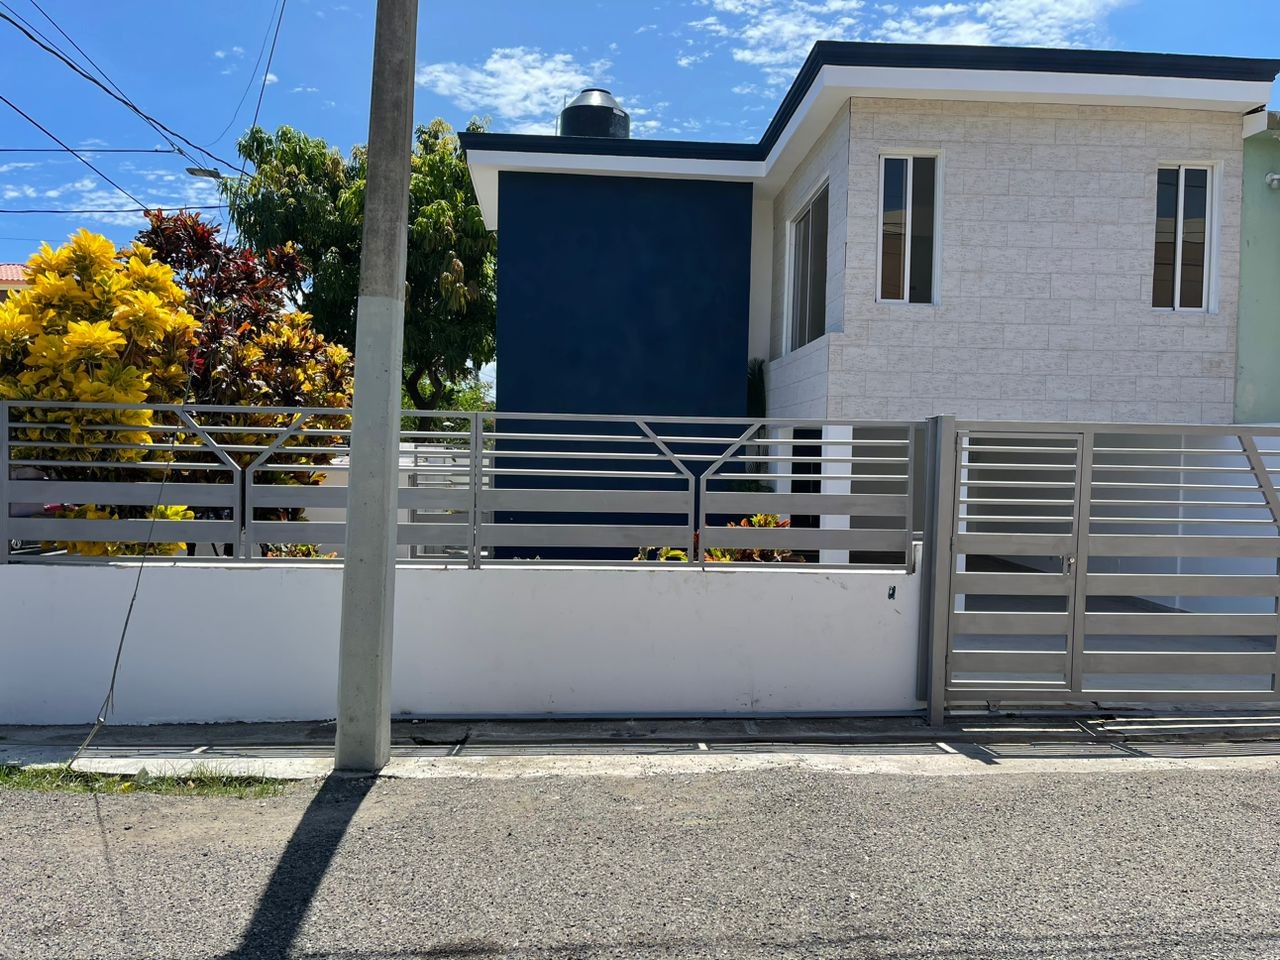 casas - Casa en urbanización Bayardo puerto plata